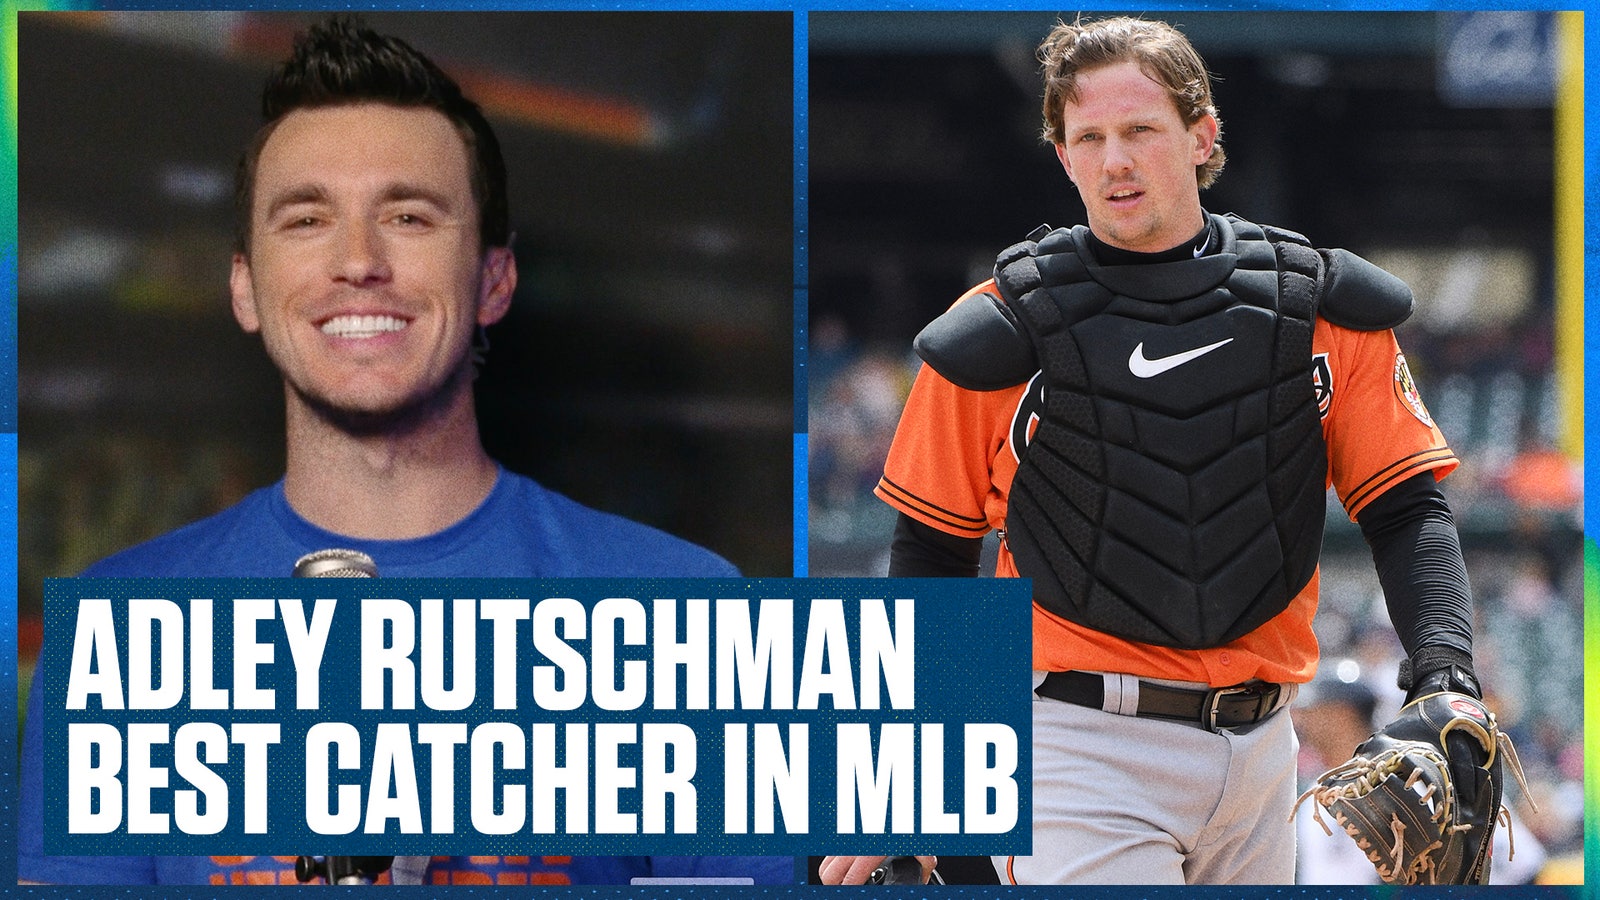 Orioles' Adley Rutschman is NOW the best catcher in MLB